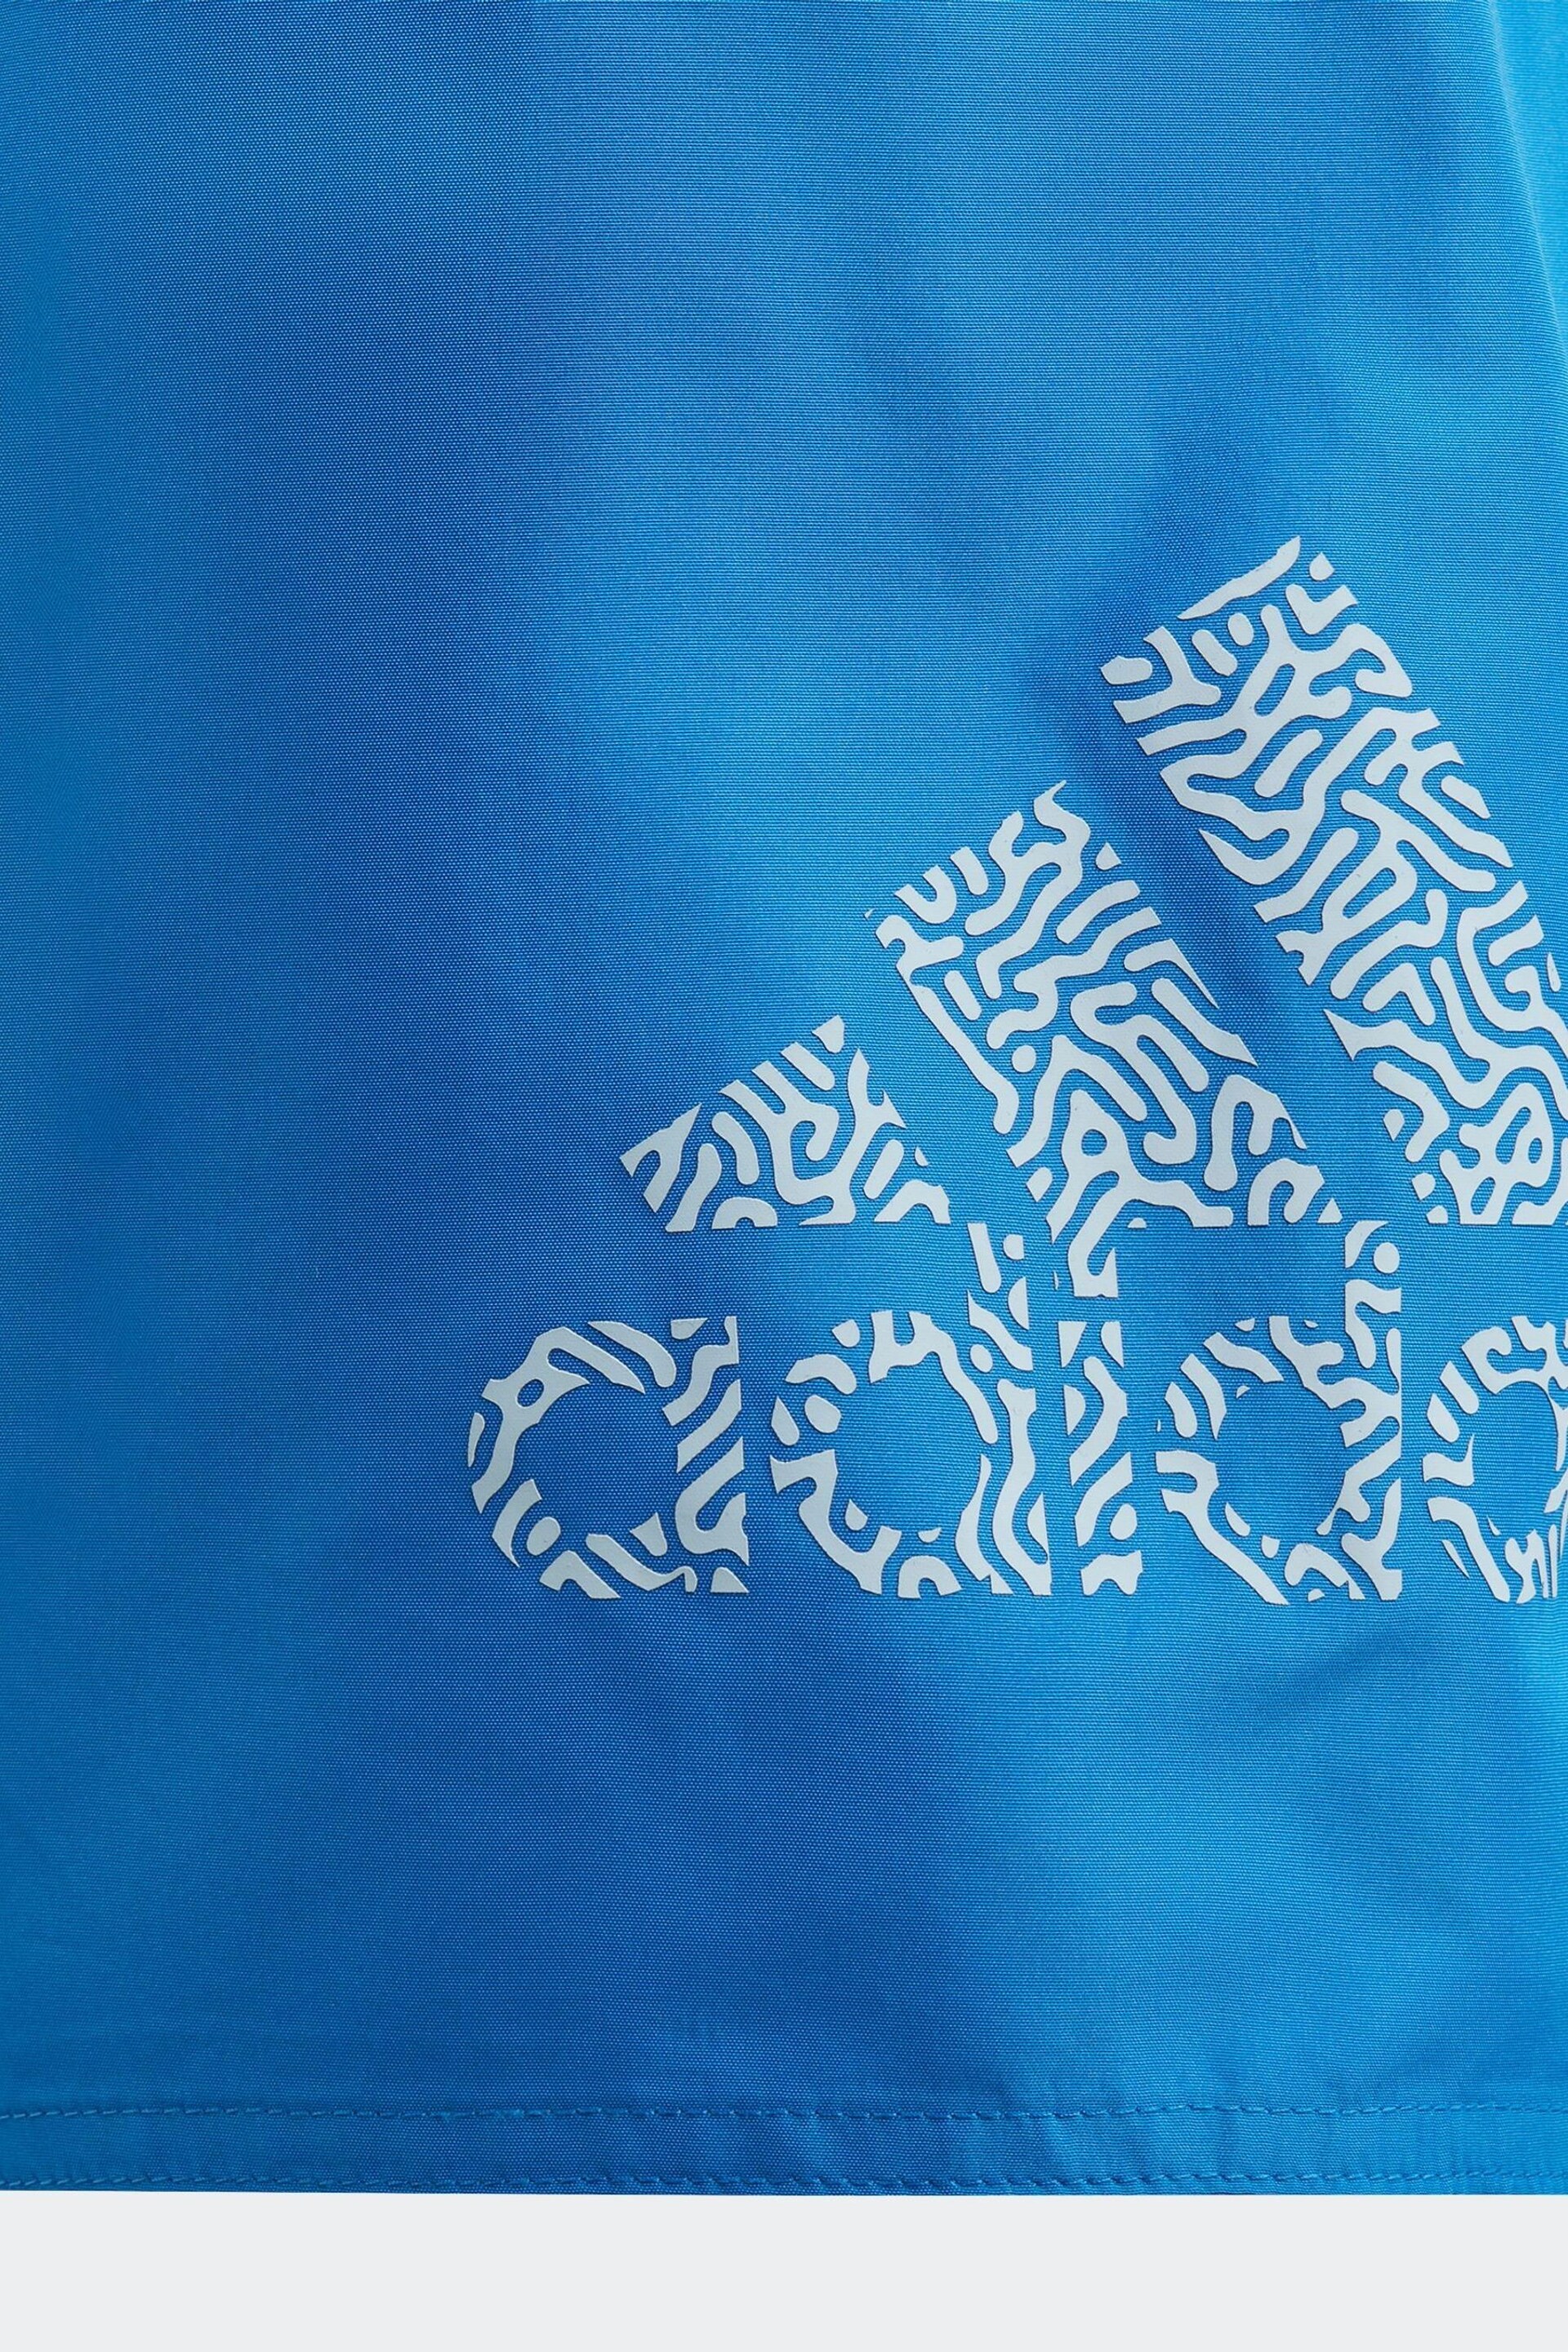 adidas Blue Performance Logo Clx Swim Shorts - Image 5 of 5